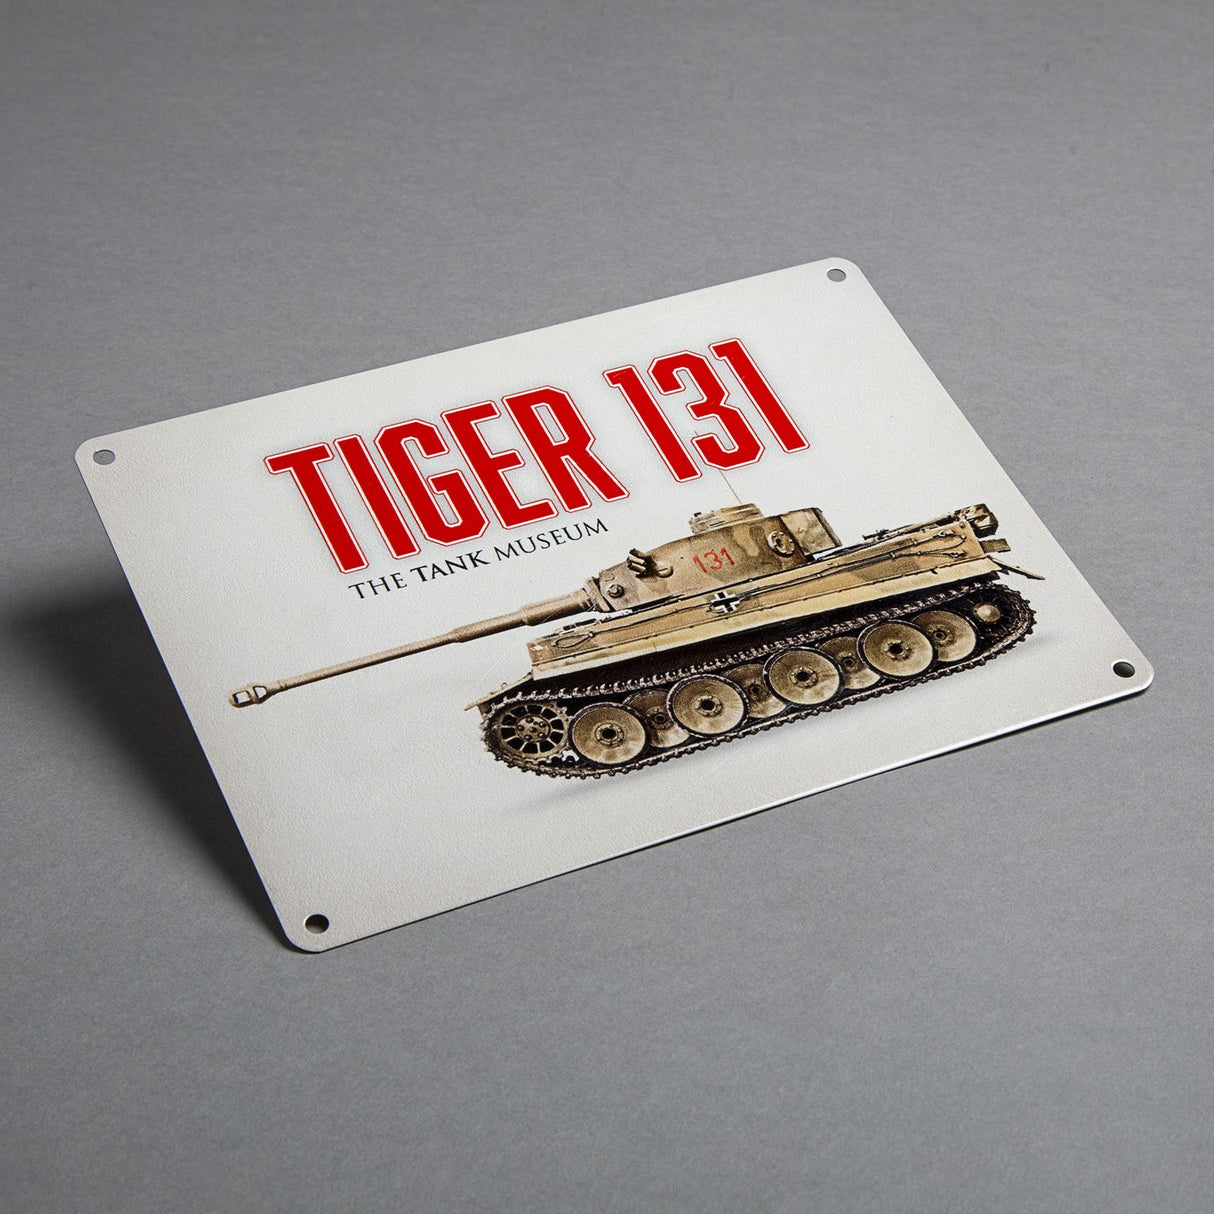 Large Tiger 131 Metal sign